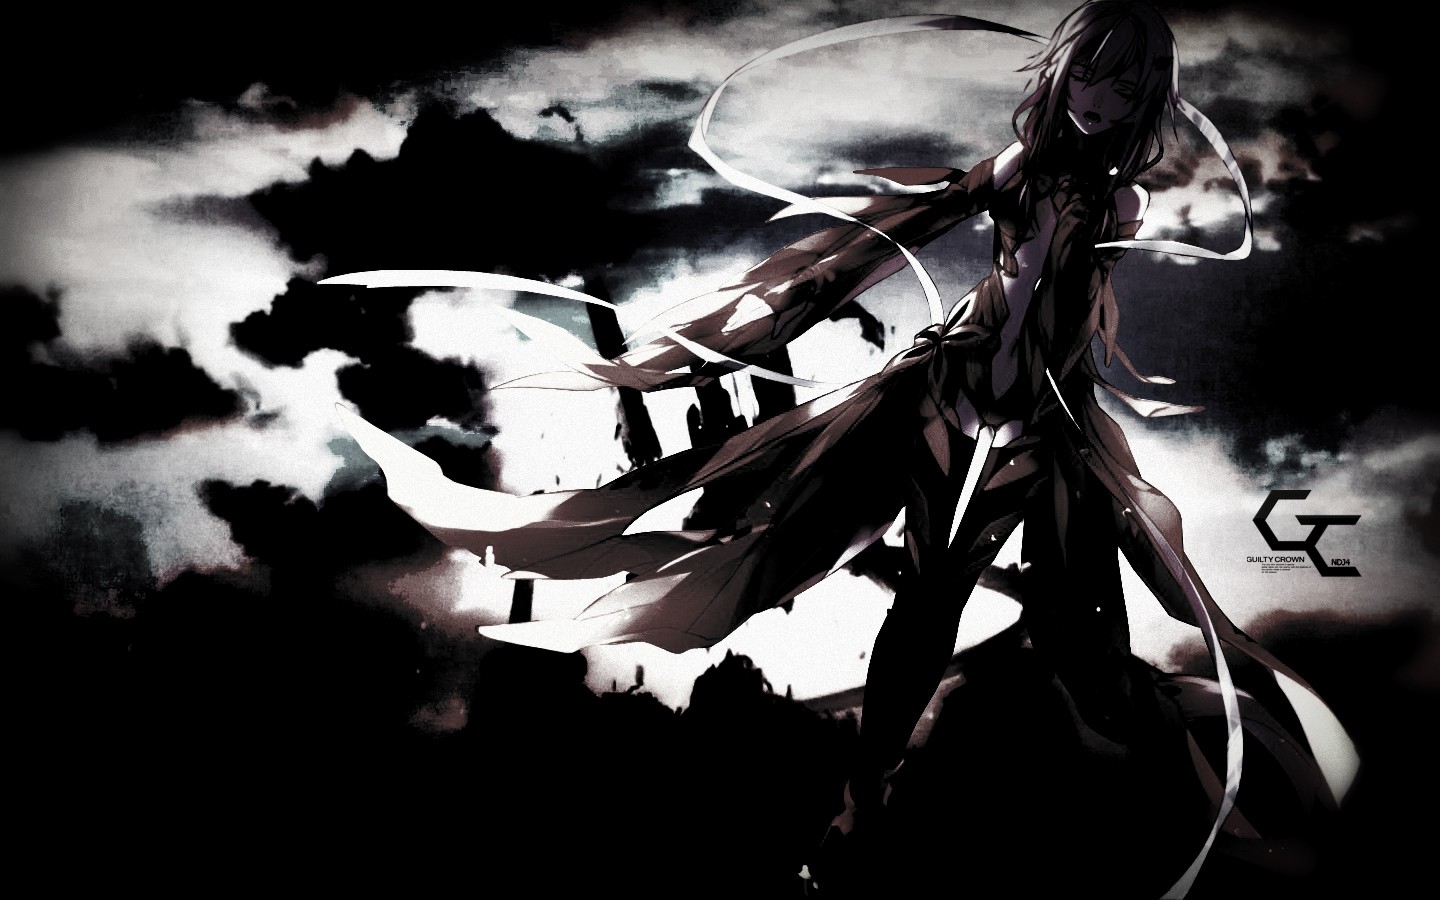 fondo de pantalla de anime 1440x900,cg artwork,en blanco y negro,diseño gráfico,oscuridad,monocromo